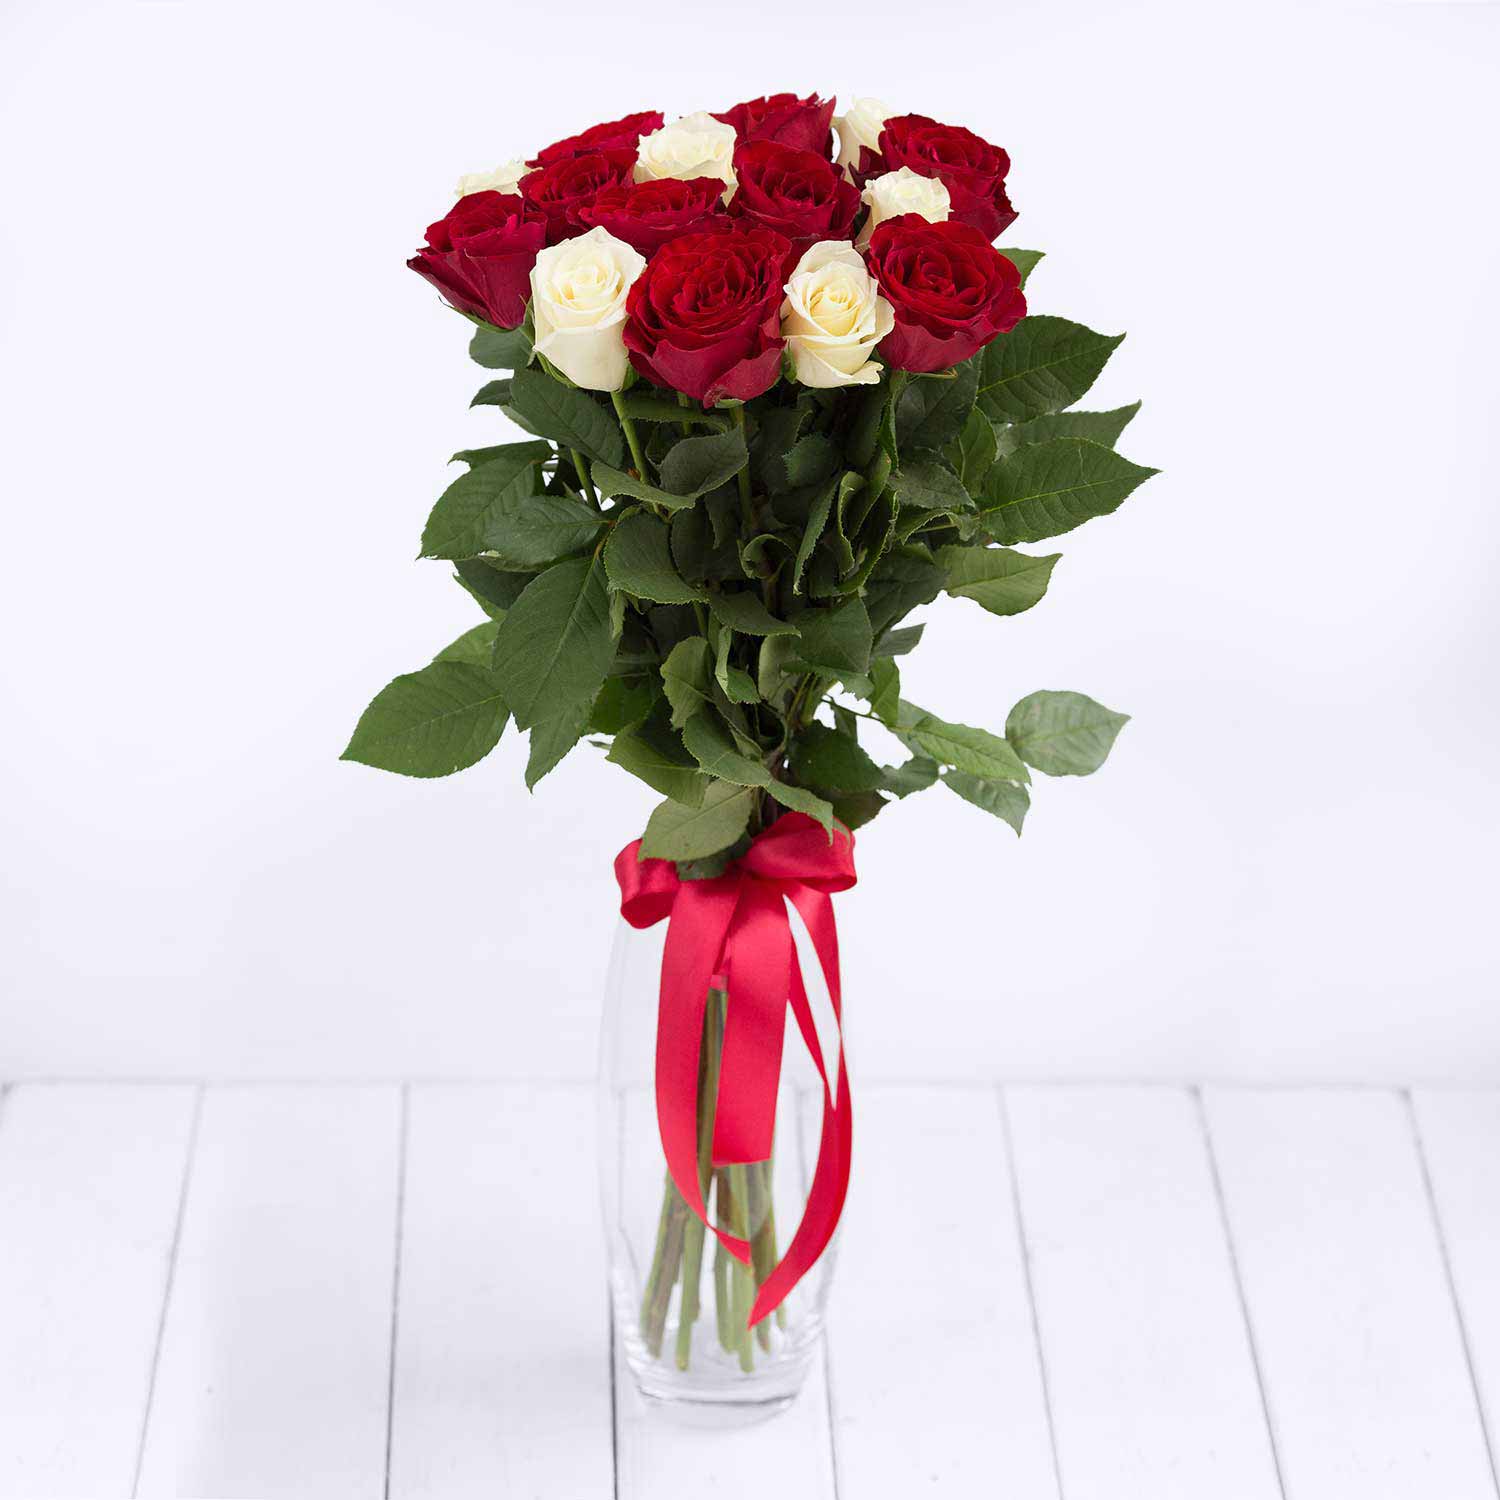 Купить розы поштучно недорого. Красные и белые розы в одном букете.